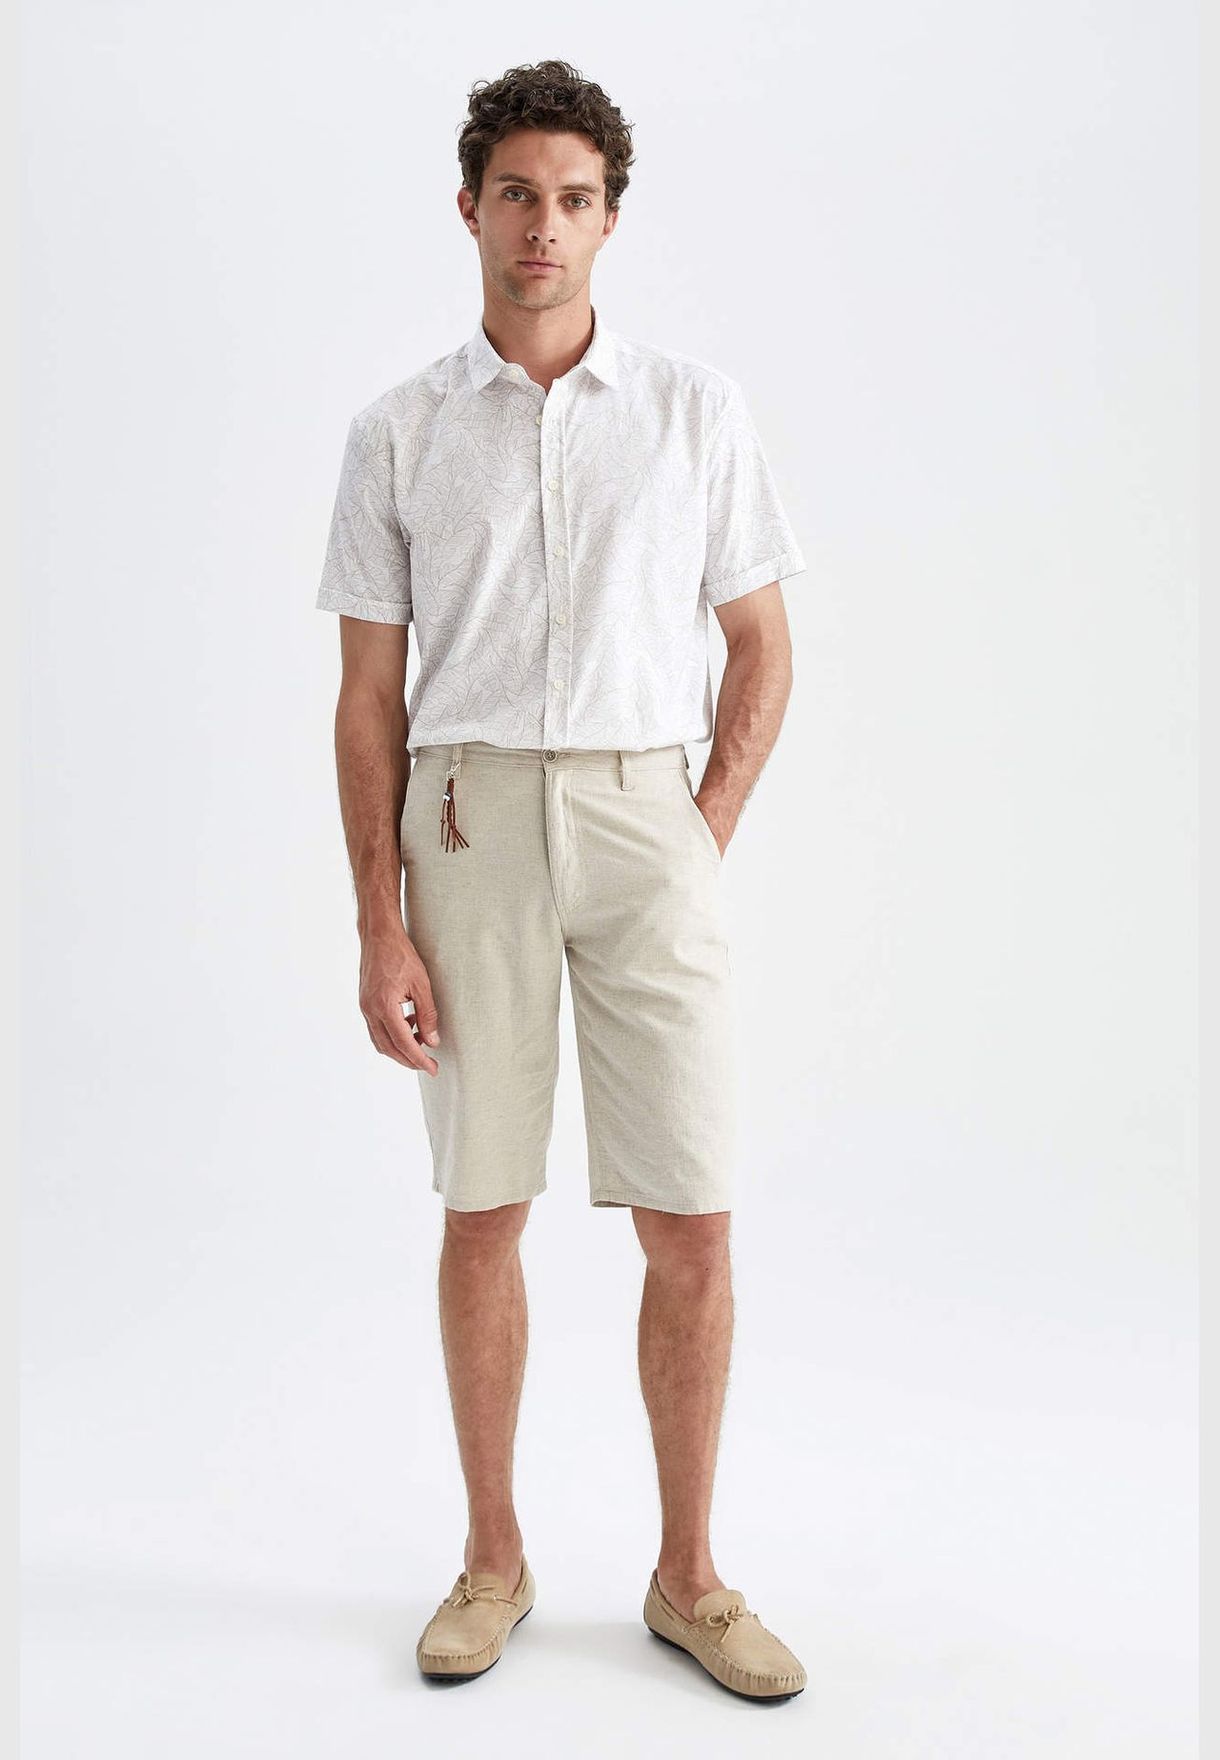 Man Regular Fit Polo Neck Woven Top Short Sleeve Shirt